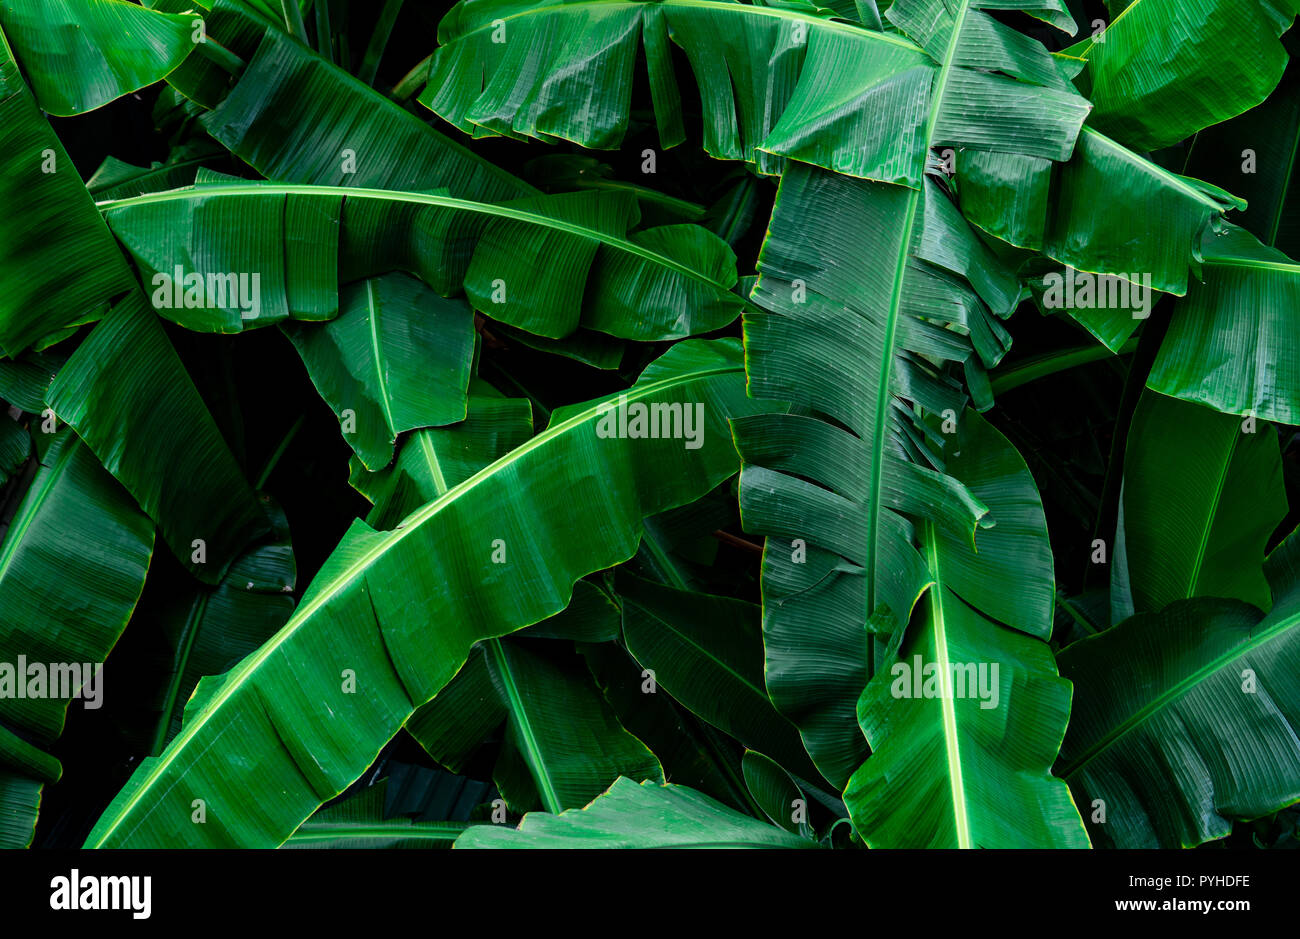 Les feuilles vertes de bananiers texture background. La feuille de banane dans les forêts tropicales. Avec de belles feuilles vertes à motif jungle tropicale. Plante naturelle dans tropi Banque D'Images